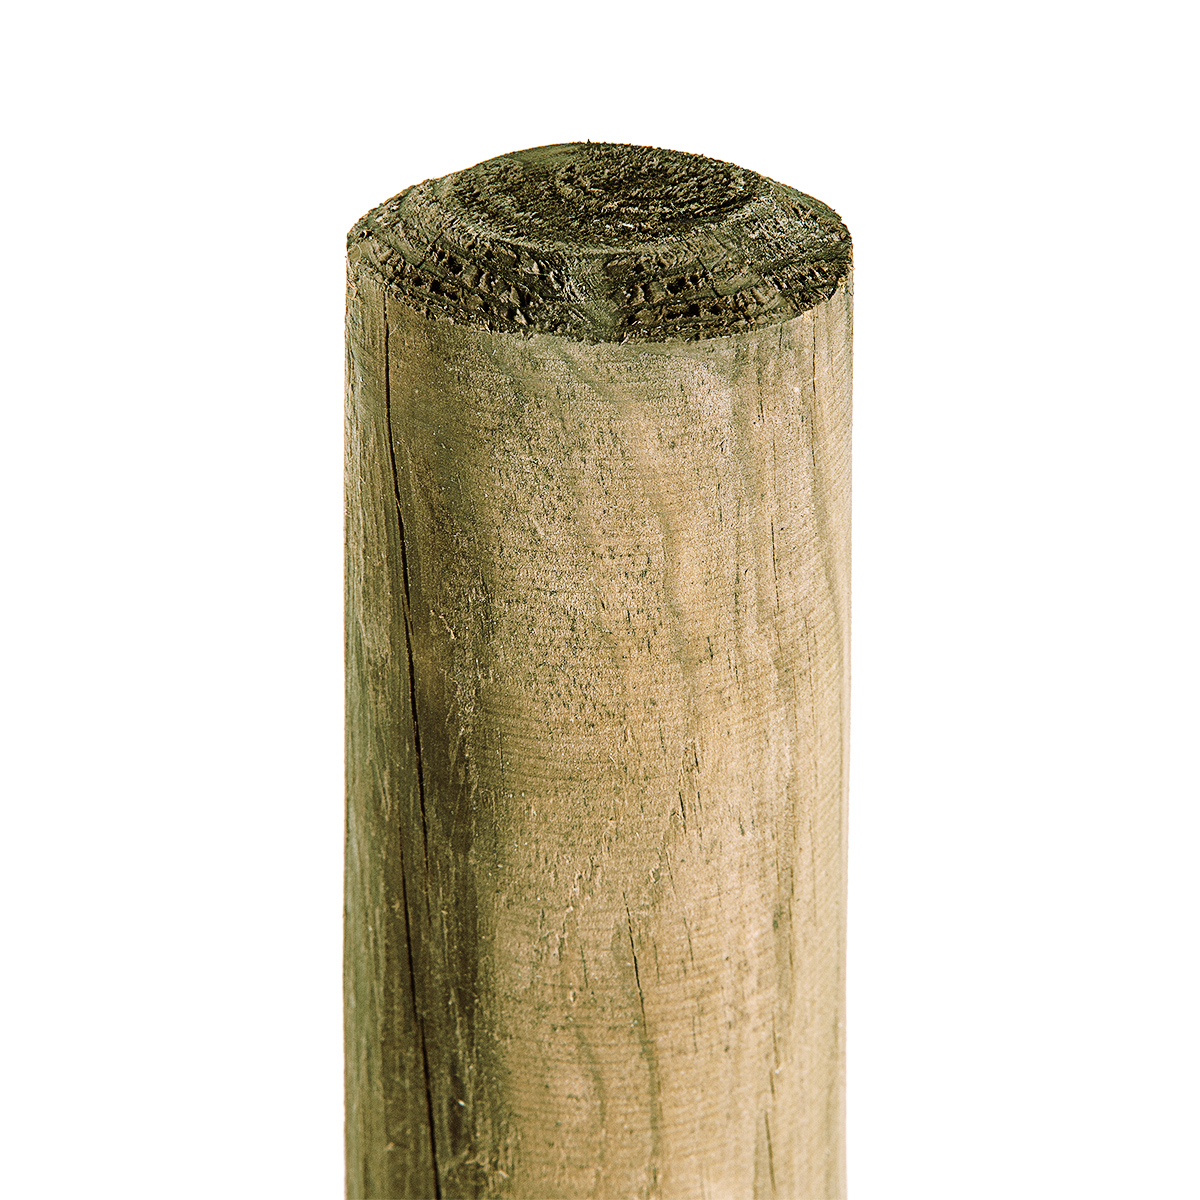 Holzpfahl 5cm Stärke x 150cm Höhe KDI-grün Pfahl Baumpfahl für Gartenzaun